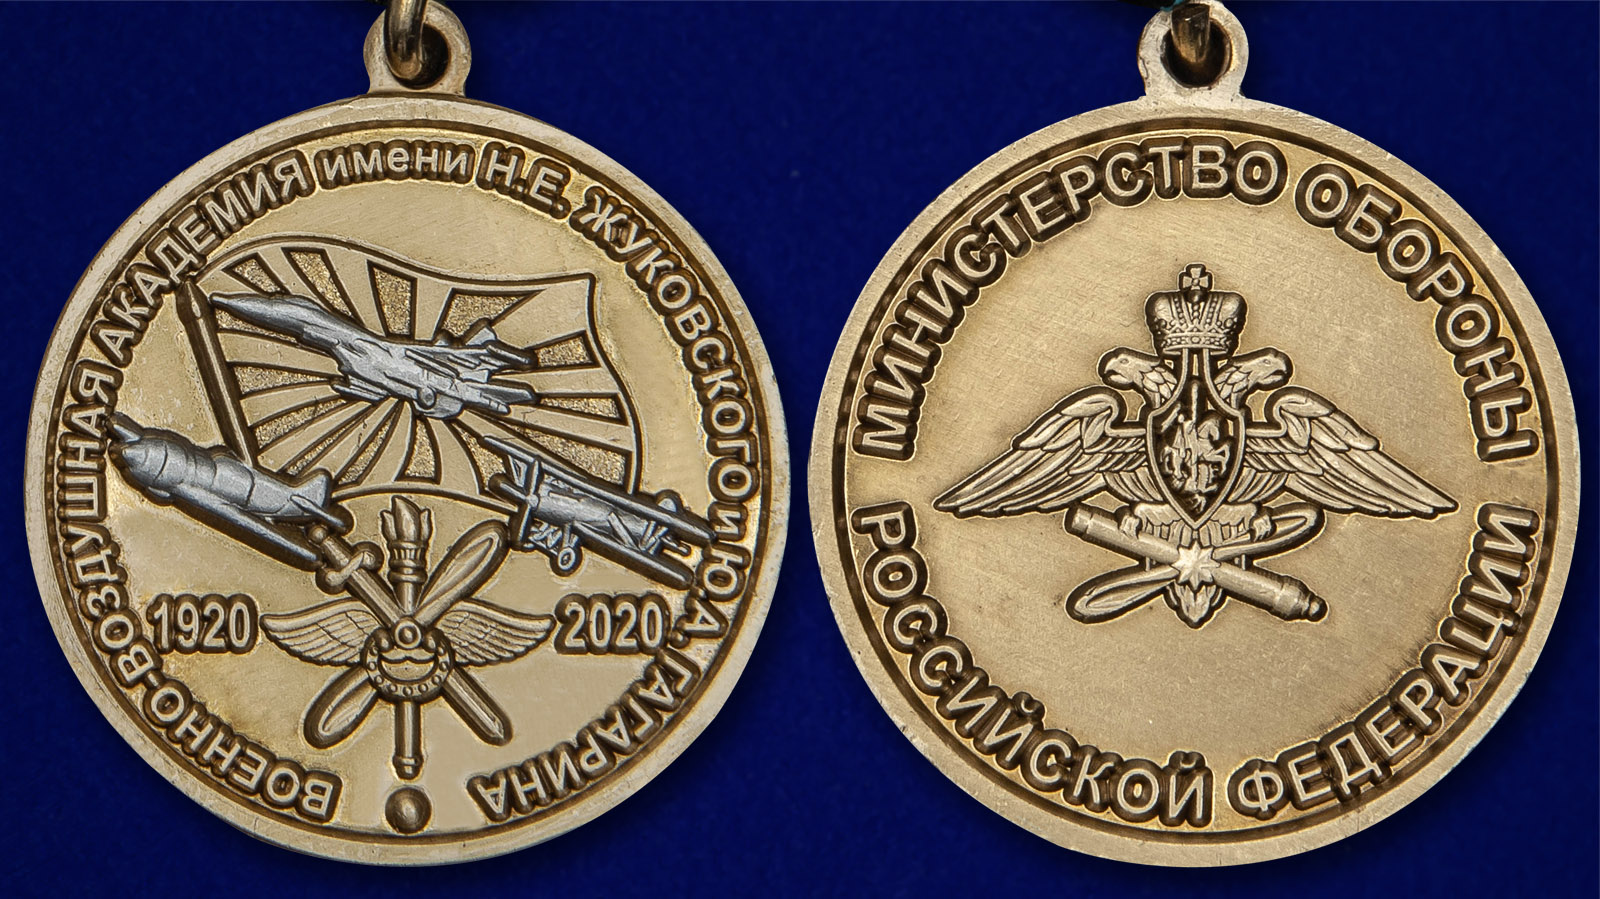 Памятная медаль "100 лет Военно-воздушной академии им. Н.Е. Жуковского и Ю.А. Гагарина" 